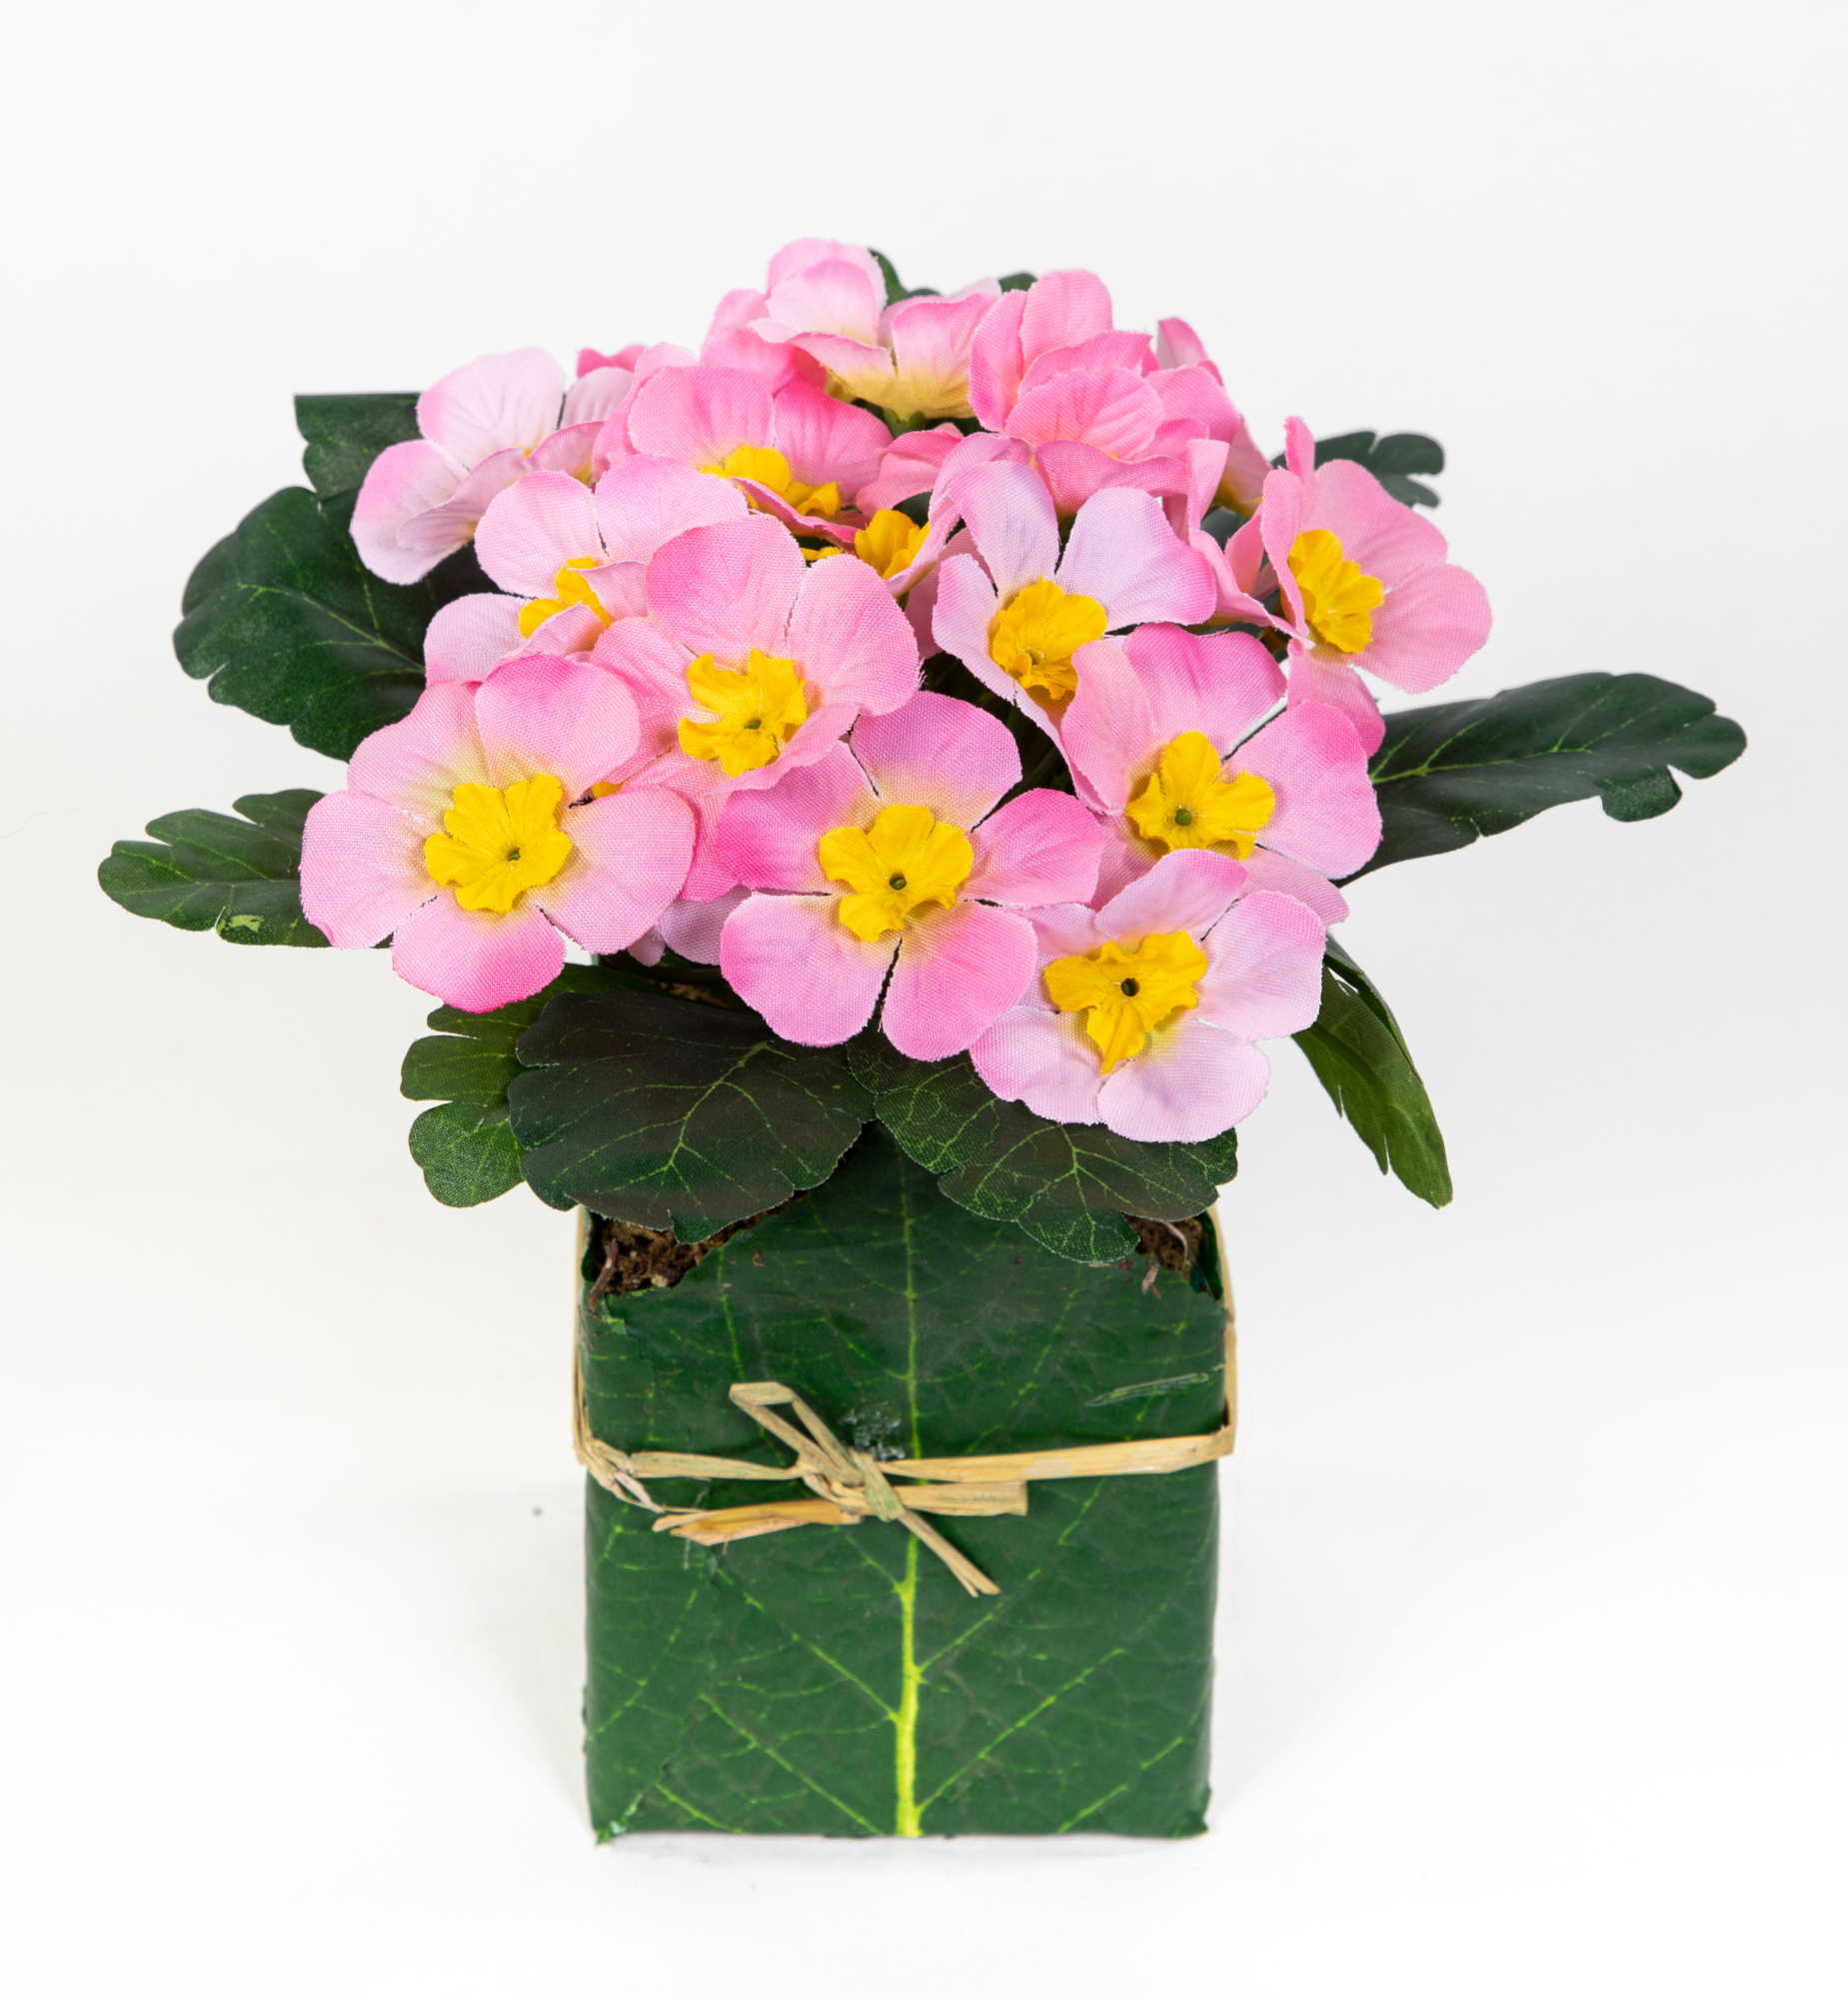 Künstliche Primel im Blatttopf 28cm rosa PM künstliche Pflanzen Primelbusch Seidenblumen Kunstblumen Kunstpflanzen